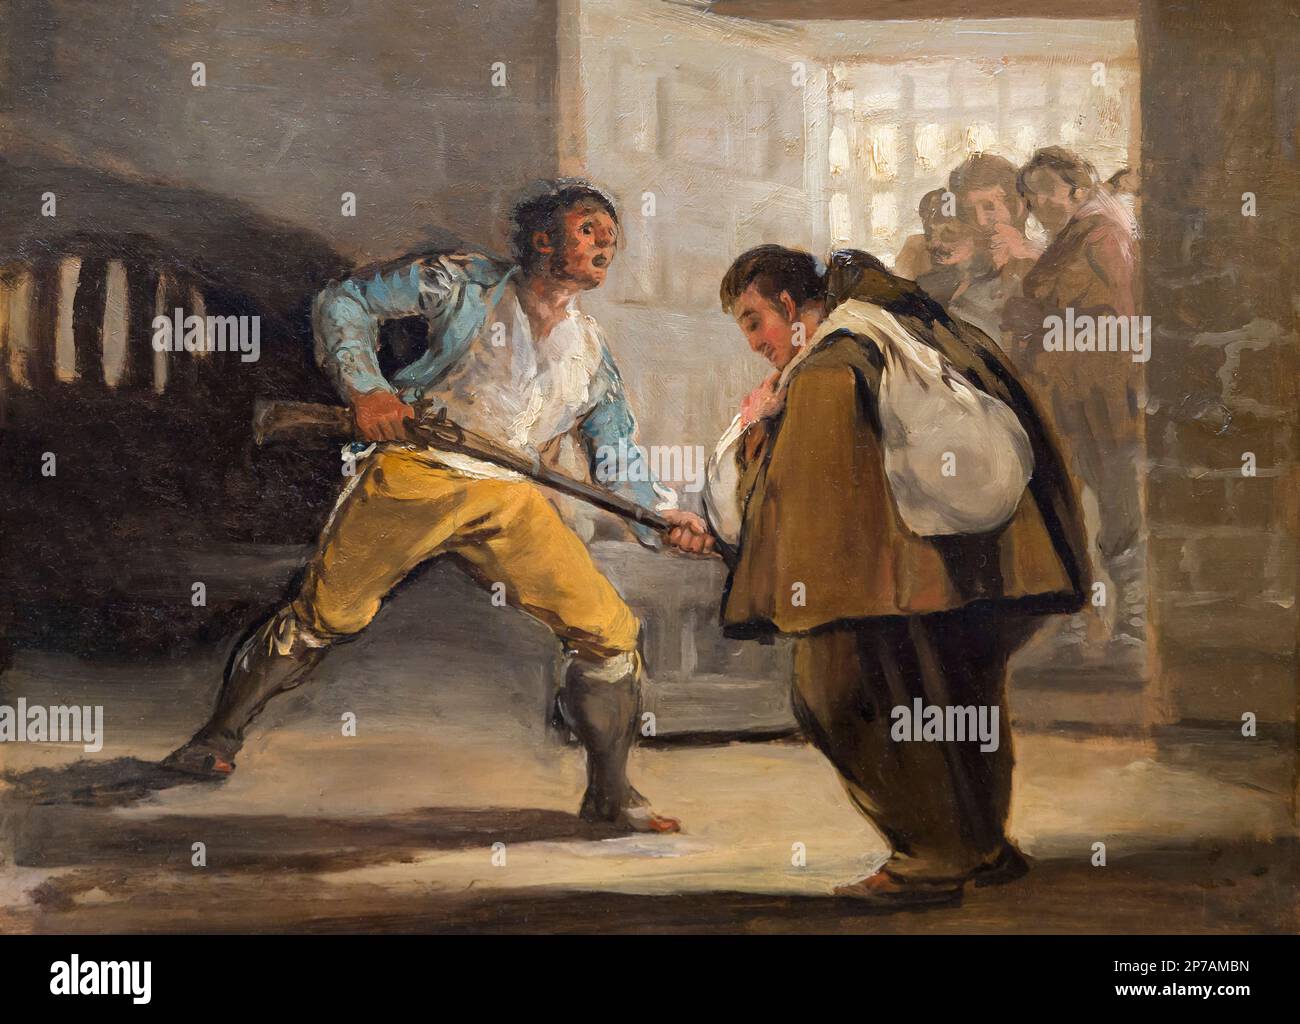 El Maragato Threatens Friar Pedro de Zaldivia with His Gun, Francisco Goya, circa 1806, Art Institute of Chicago, Chicago, Illinois, USA, North Americ Stock Photo